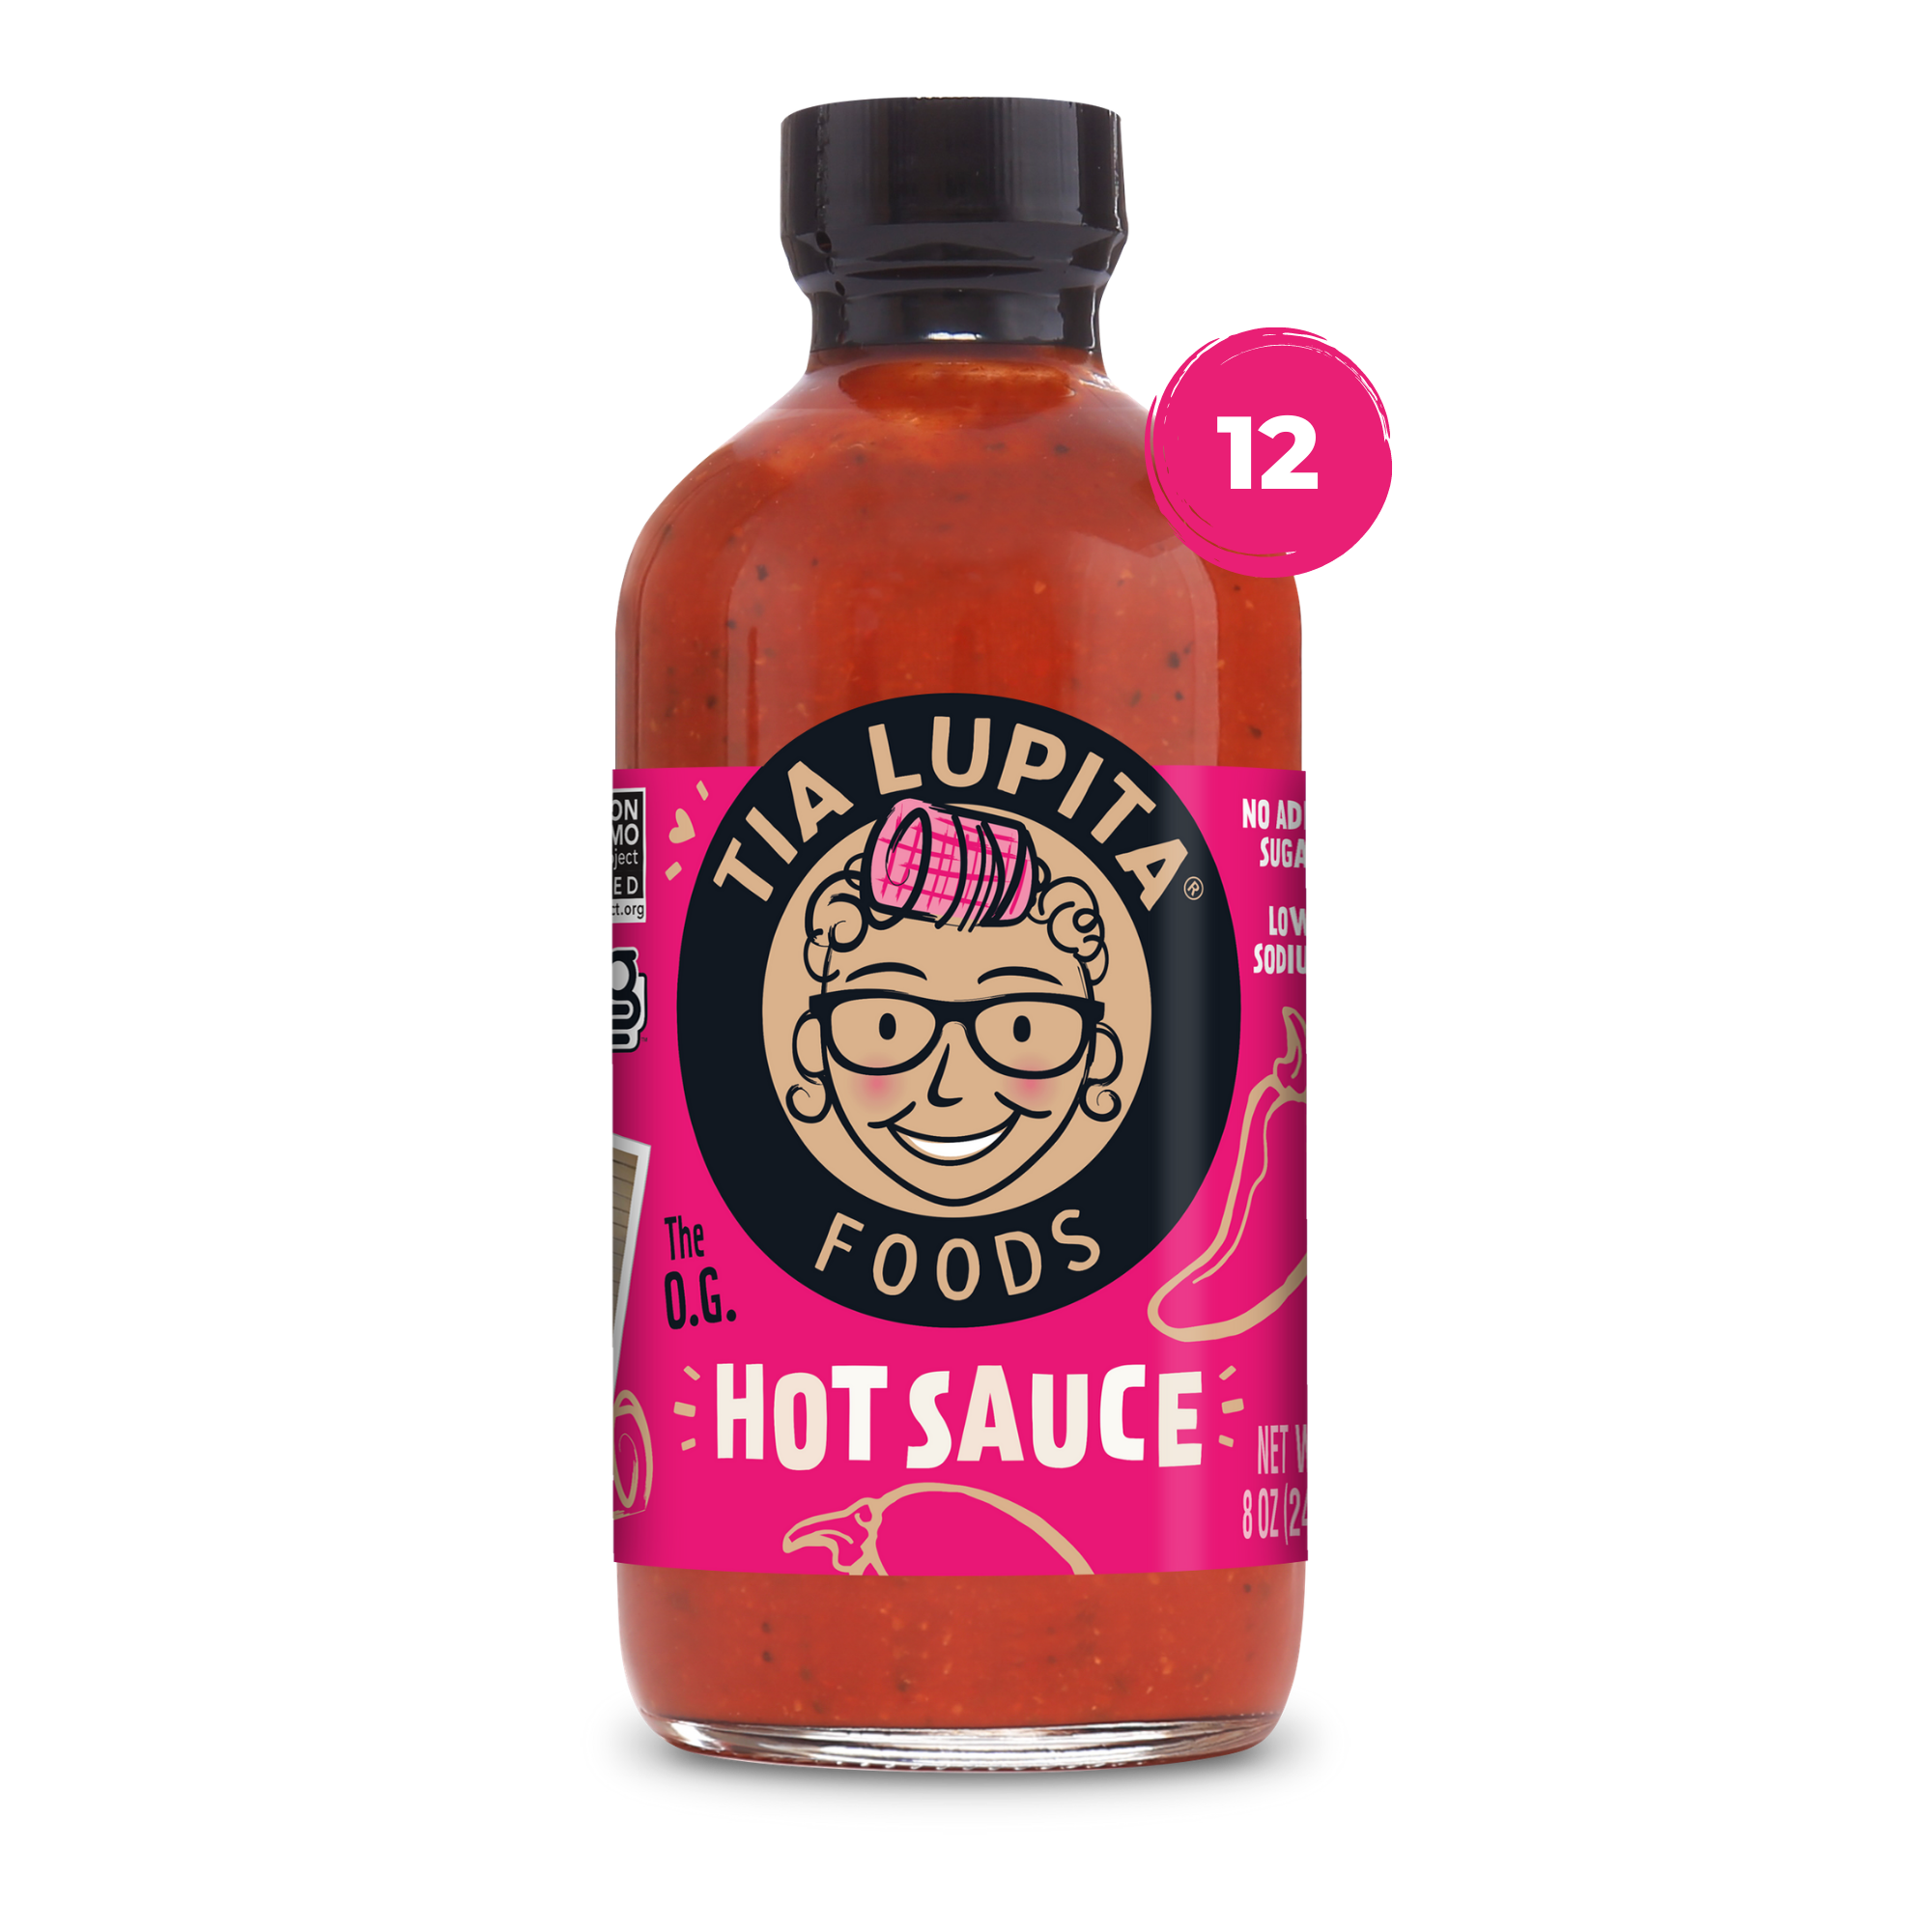 Tia Lupita Hot Sauce 12 pack Image